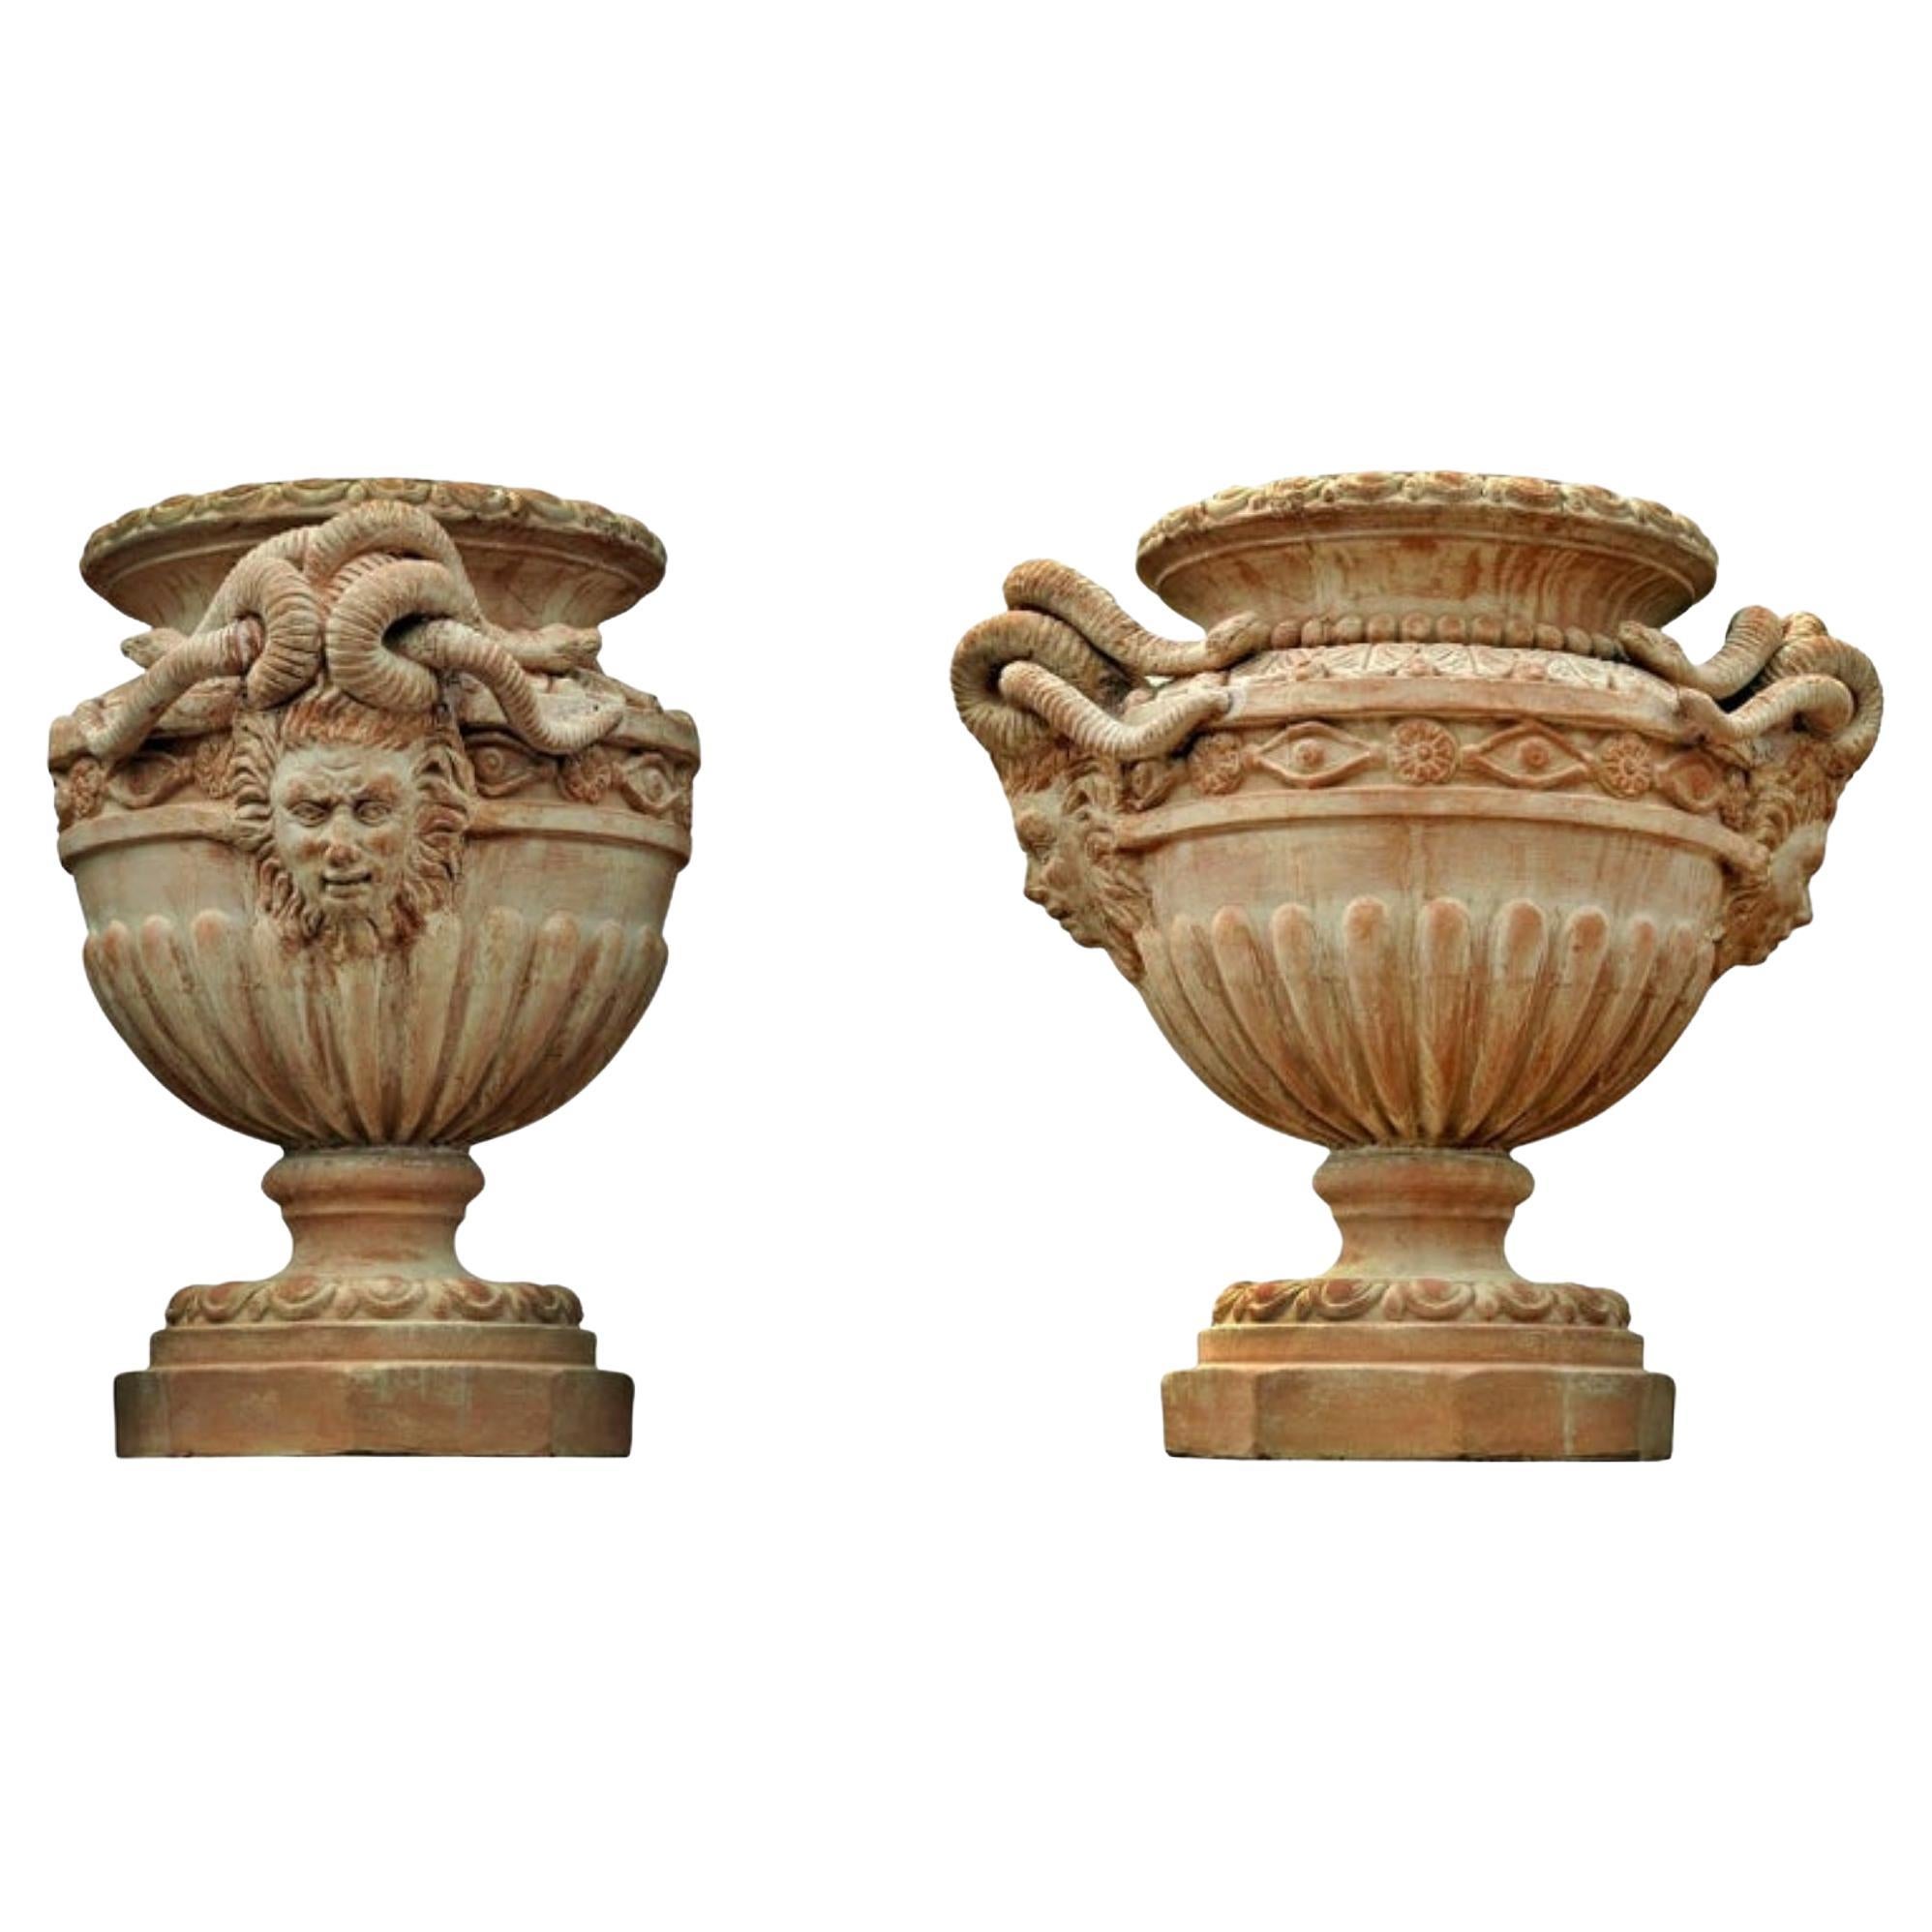 Grand vase de la Renaissance florentine médiévale avec Méduses, début du 20ème siècle